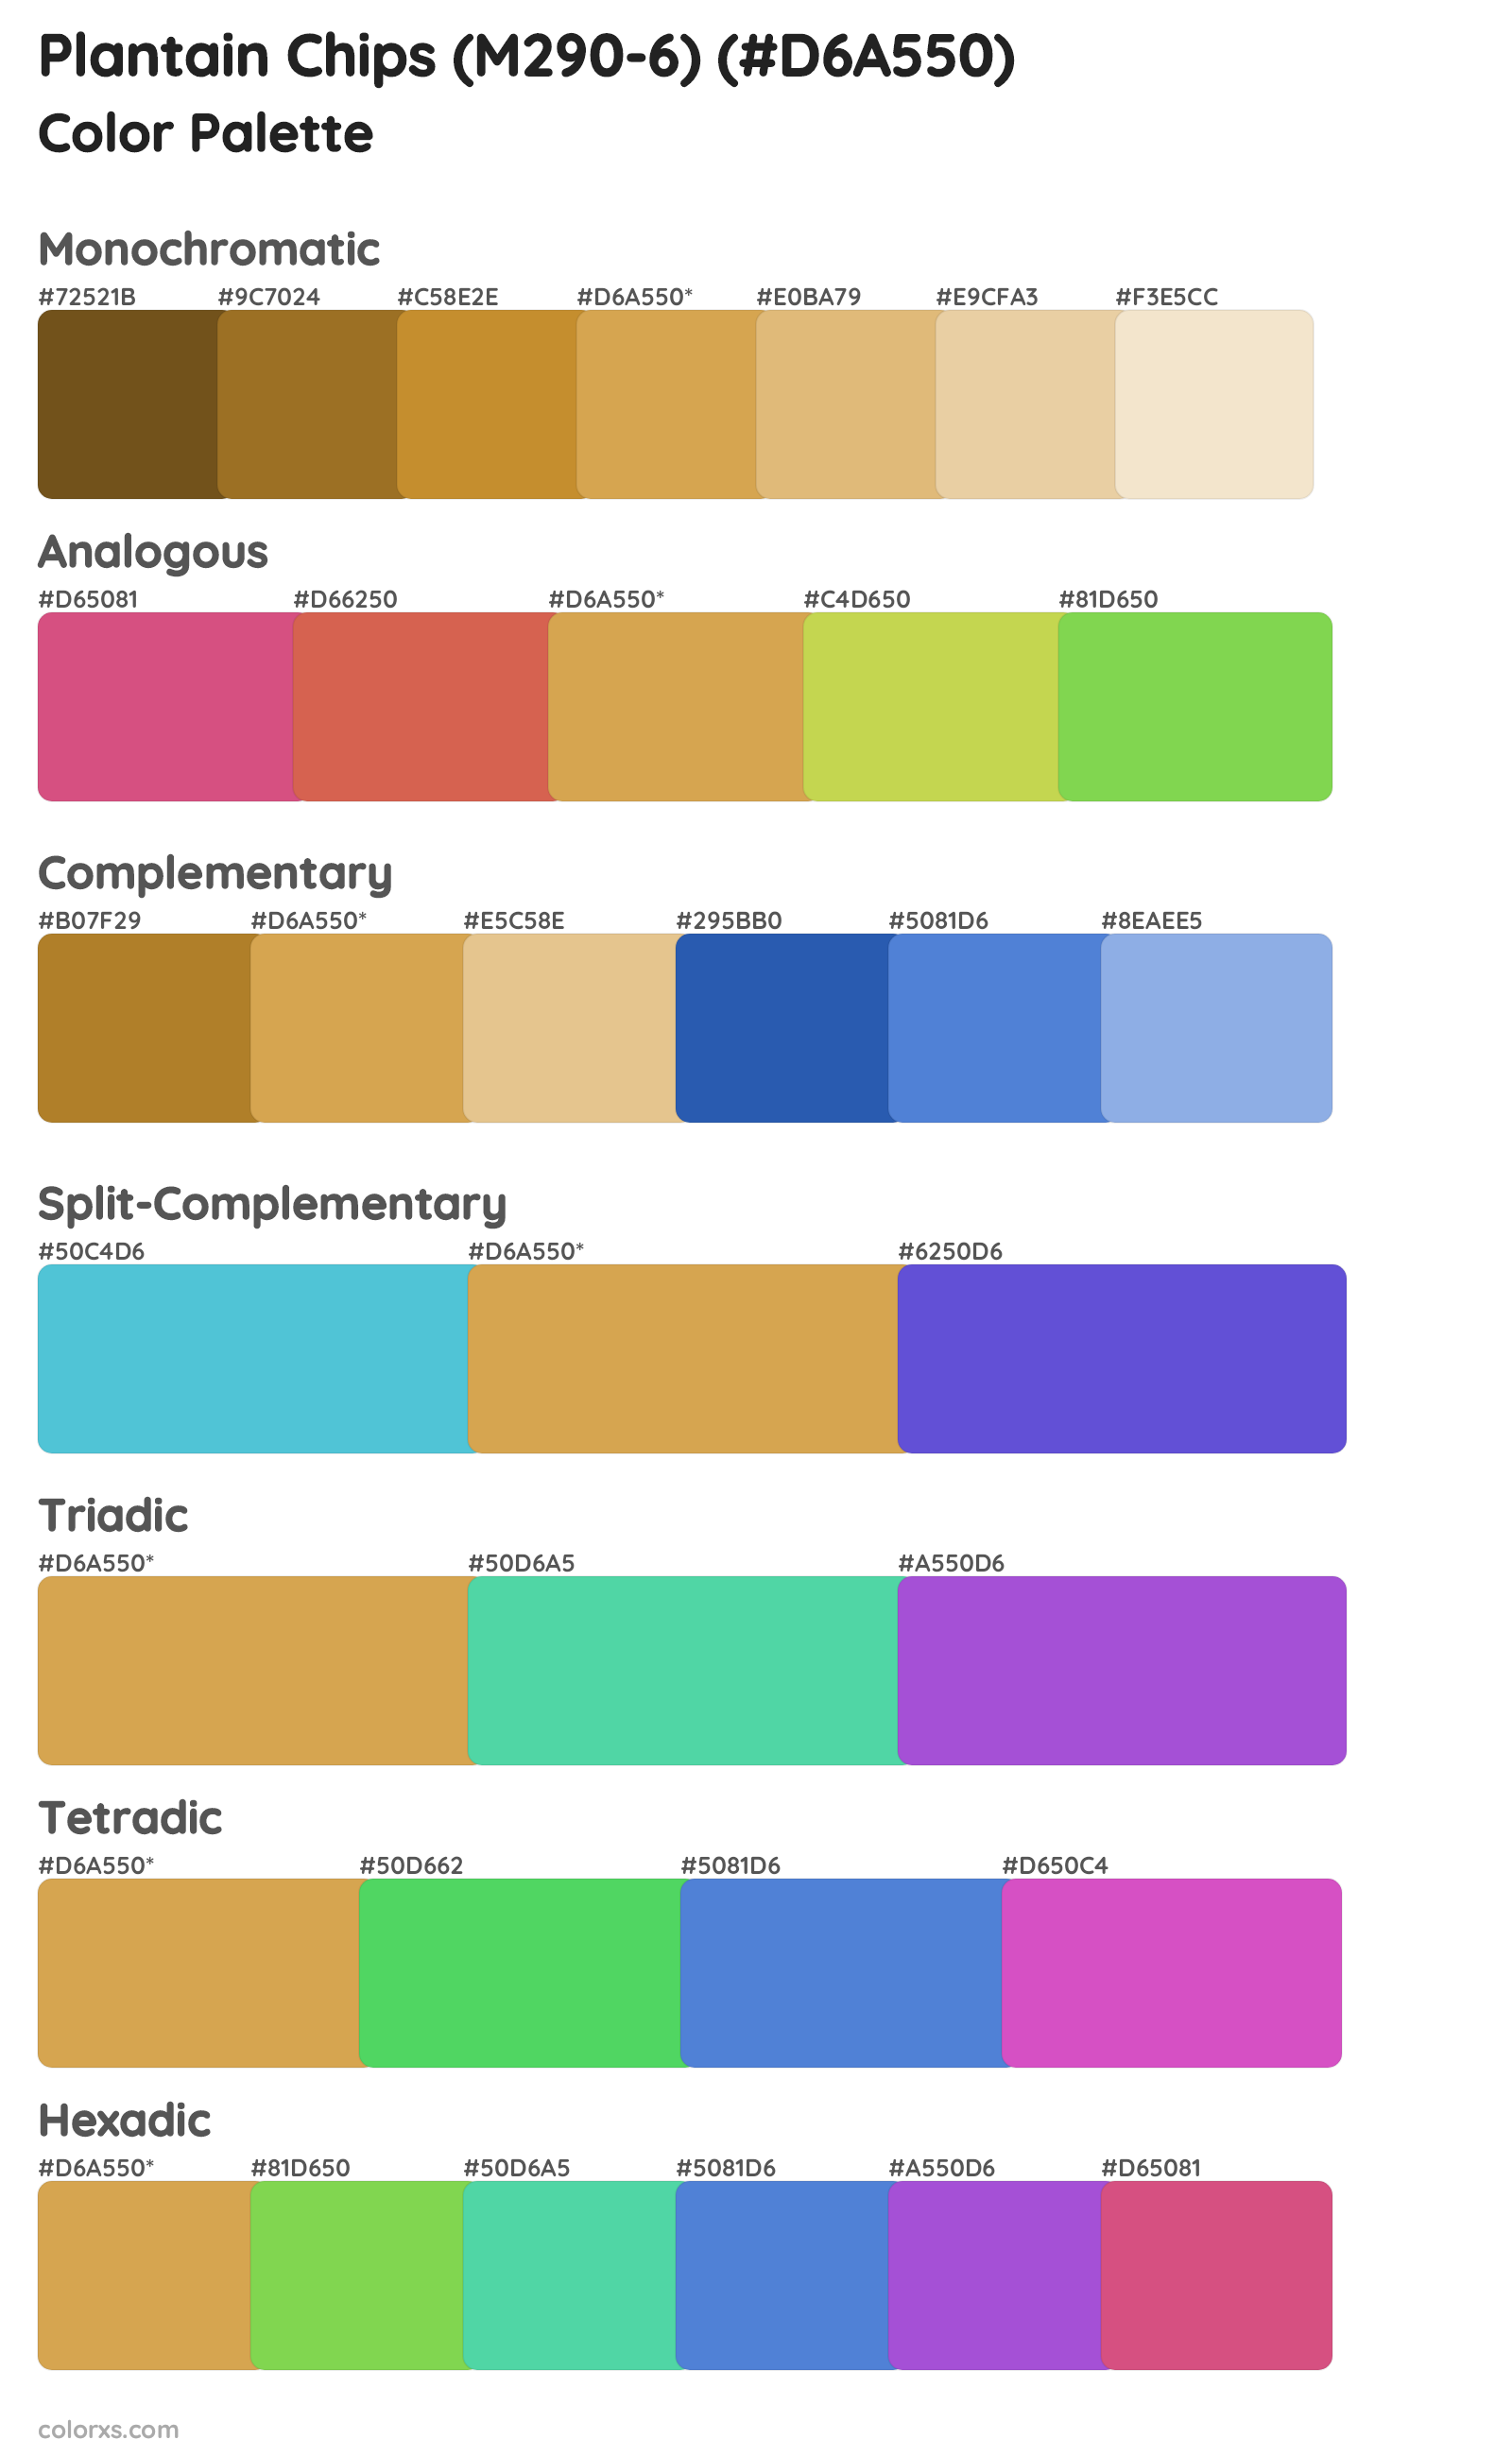 Plantain Chips (M290-6) Color Scheme Palettes